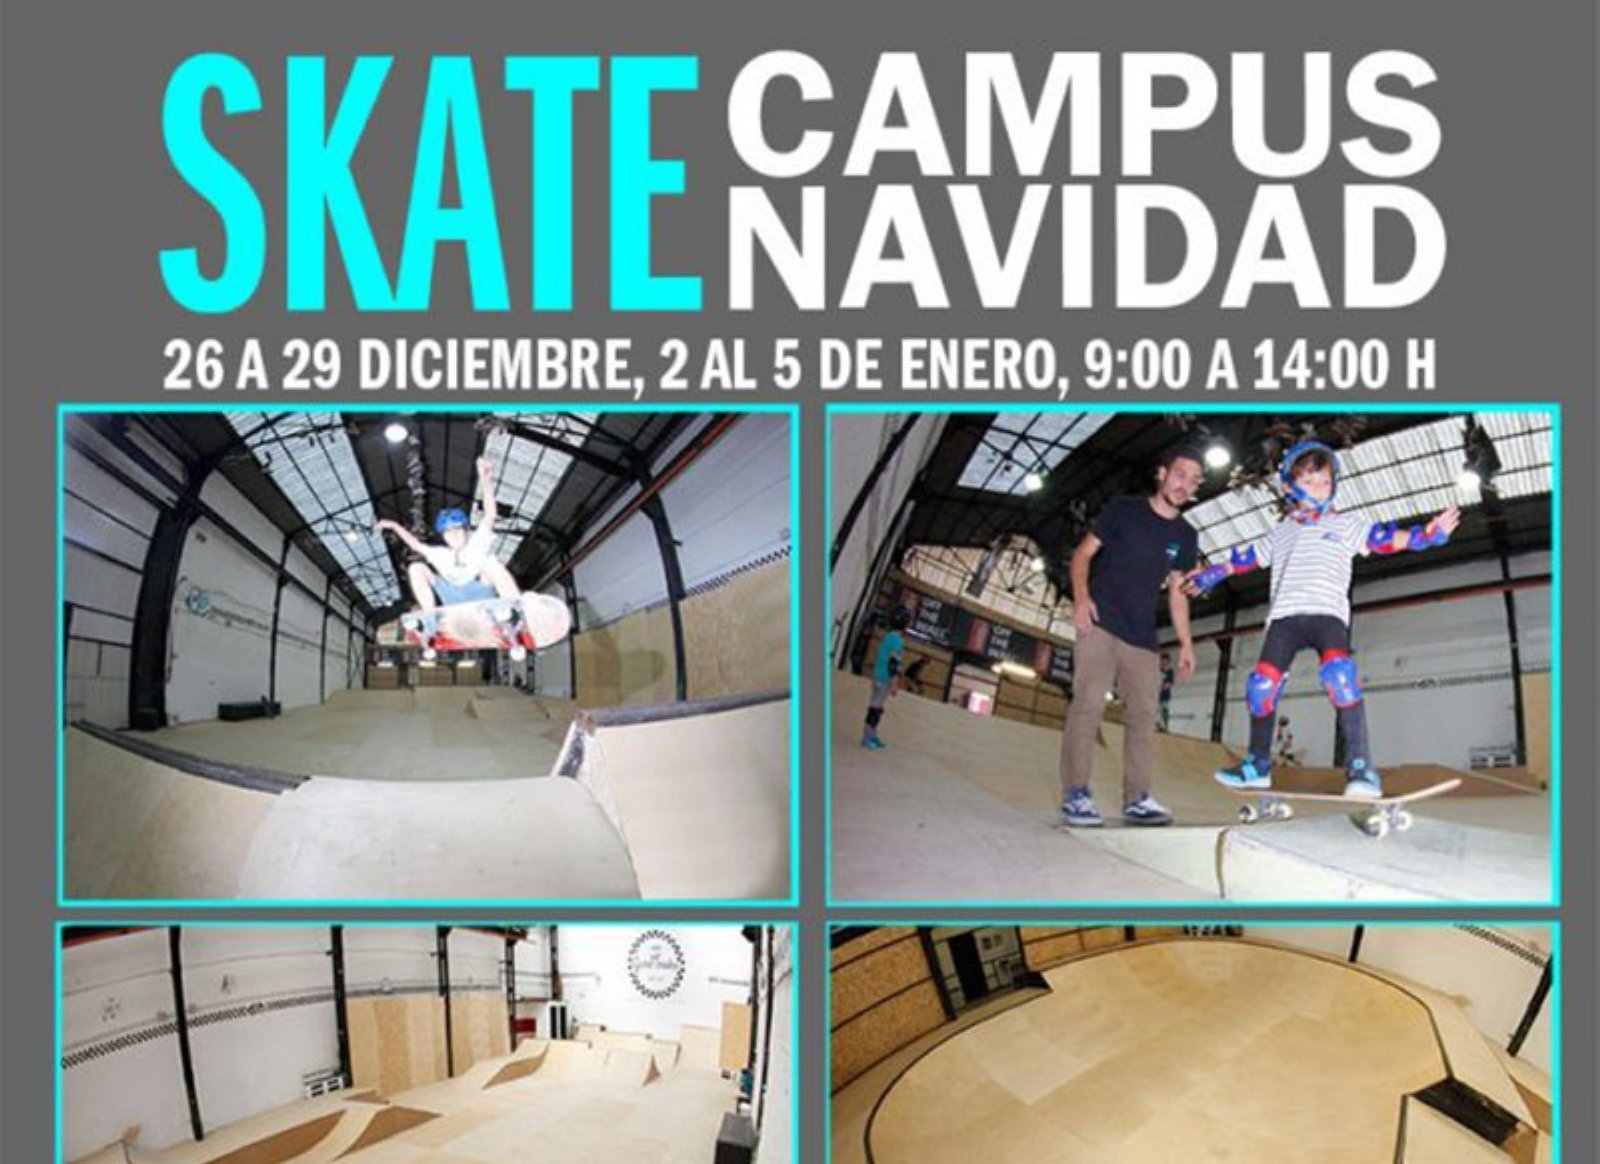 Skate Campus Navidad Guretxoko 22-23 